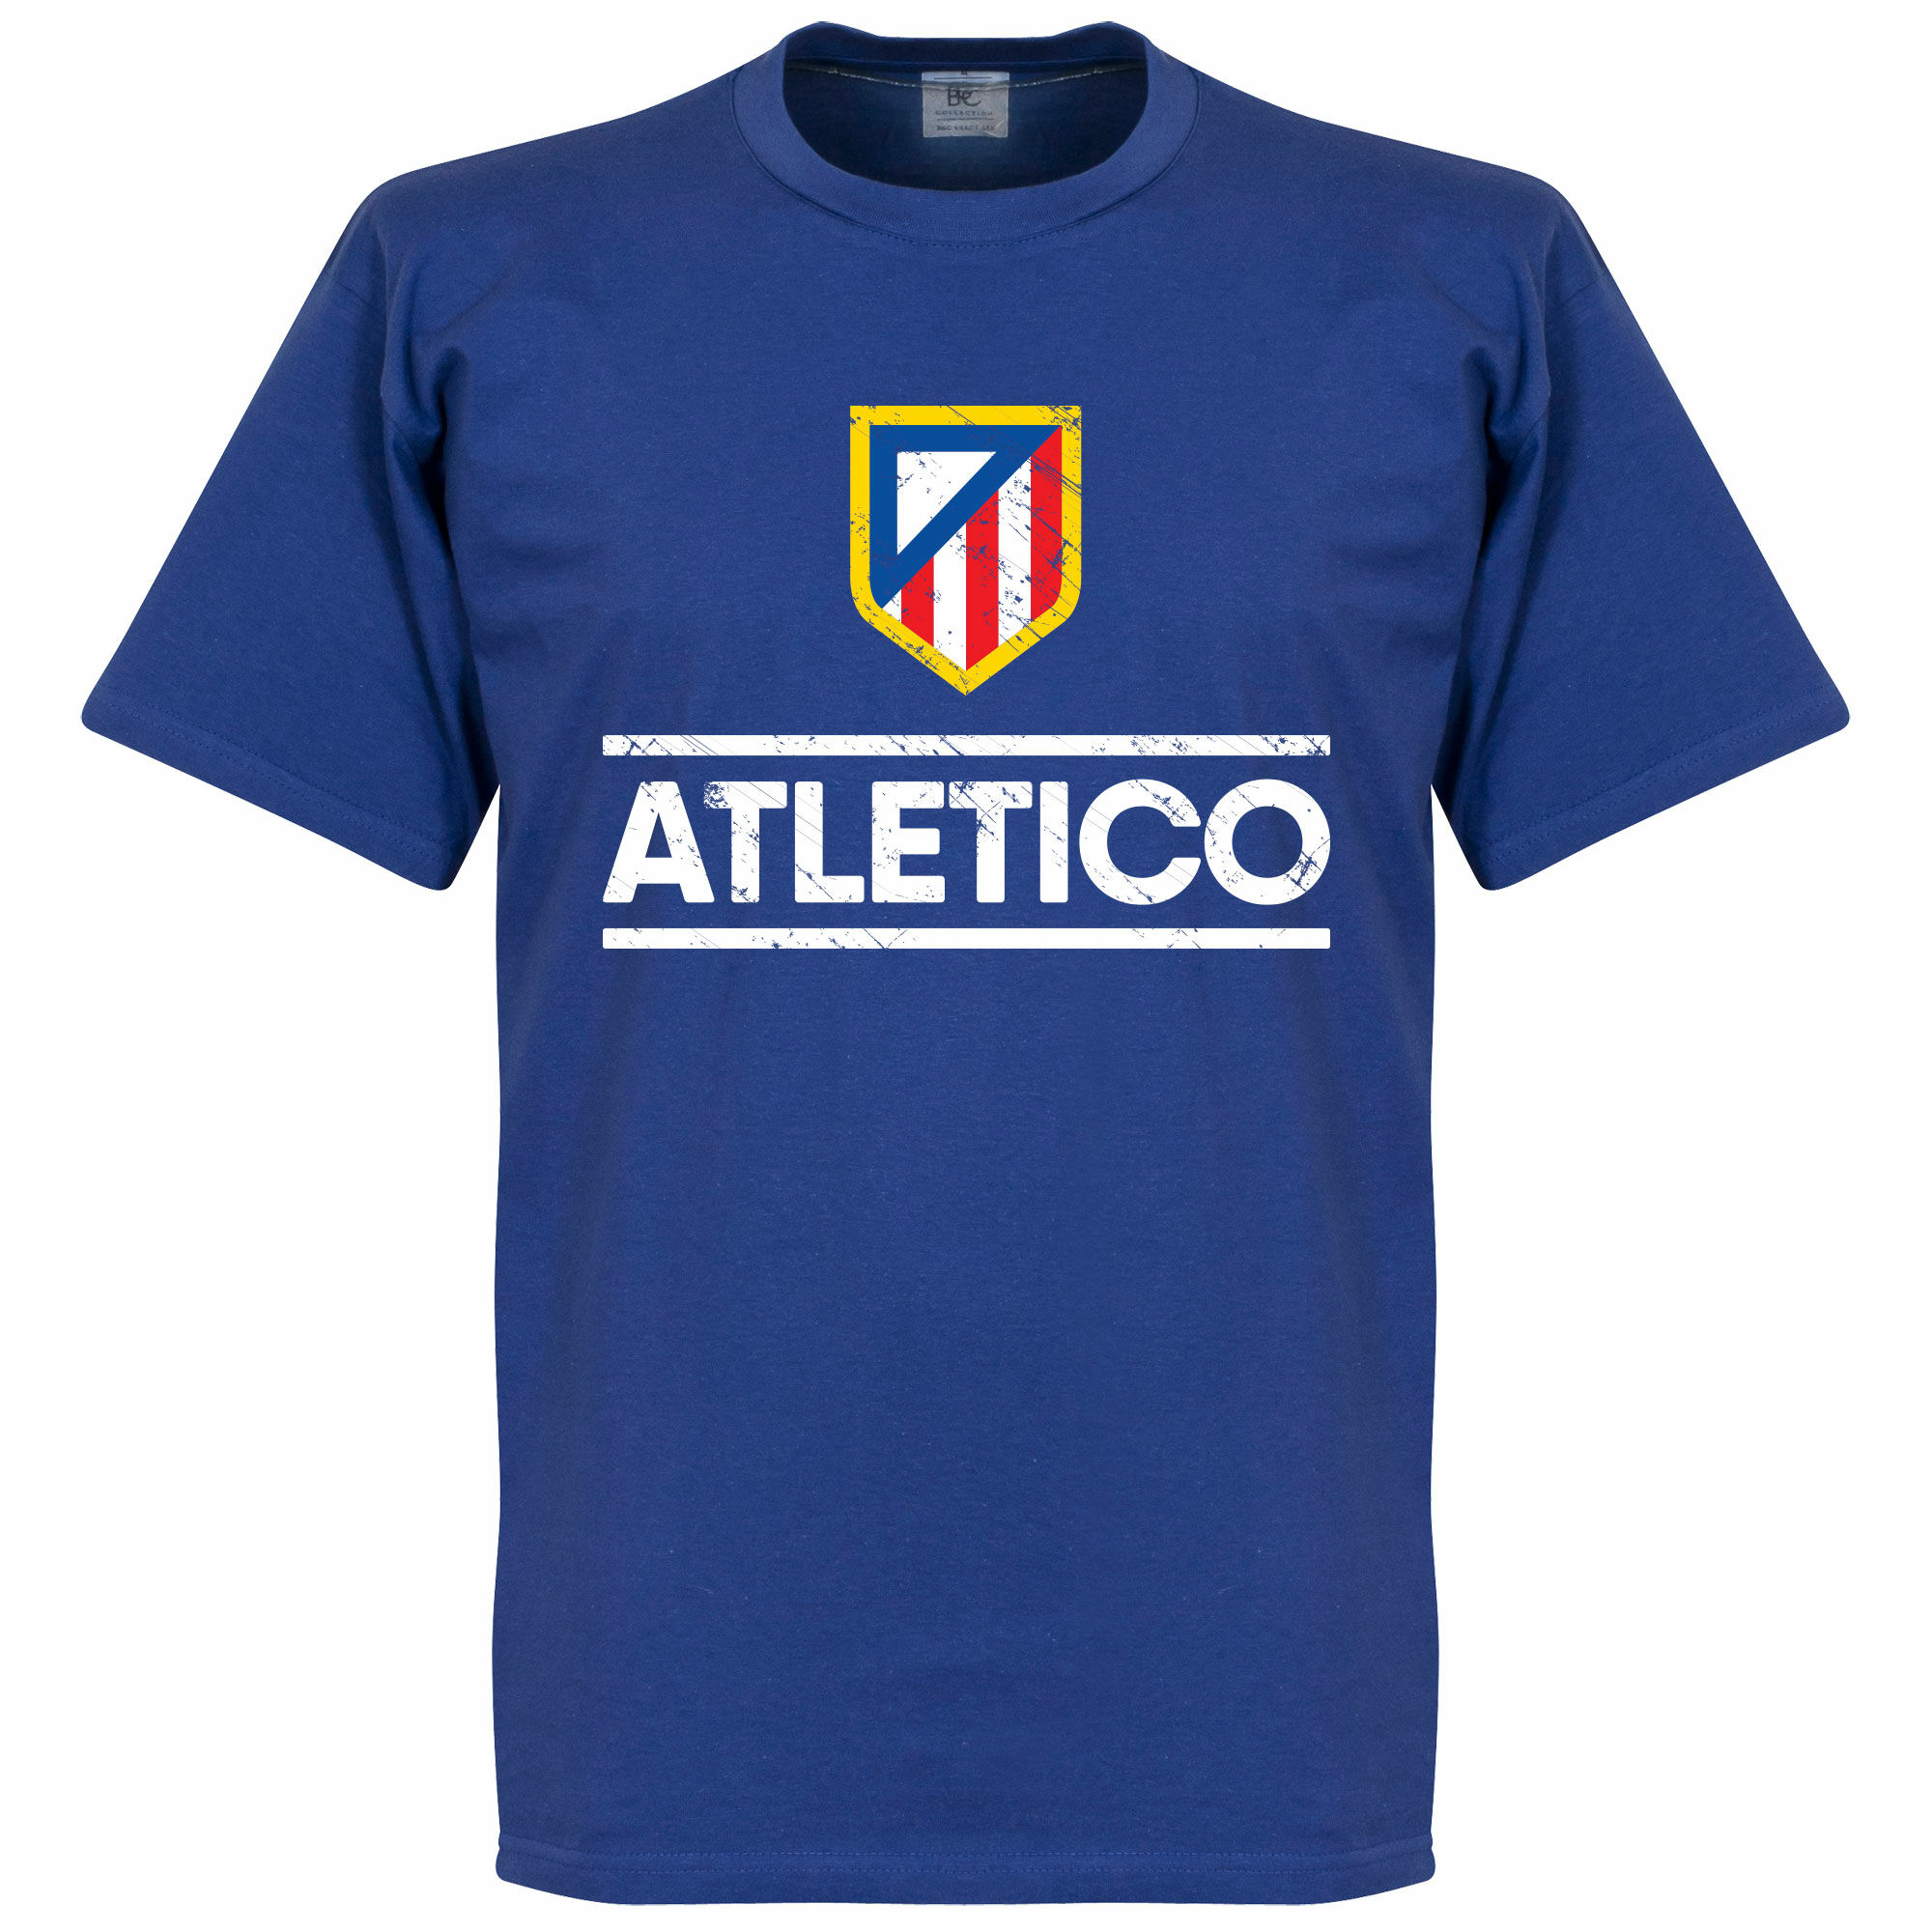 Atletico Madrid - Tričko dětské - modré